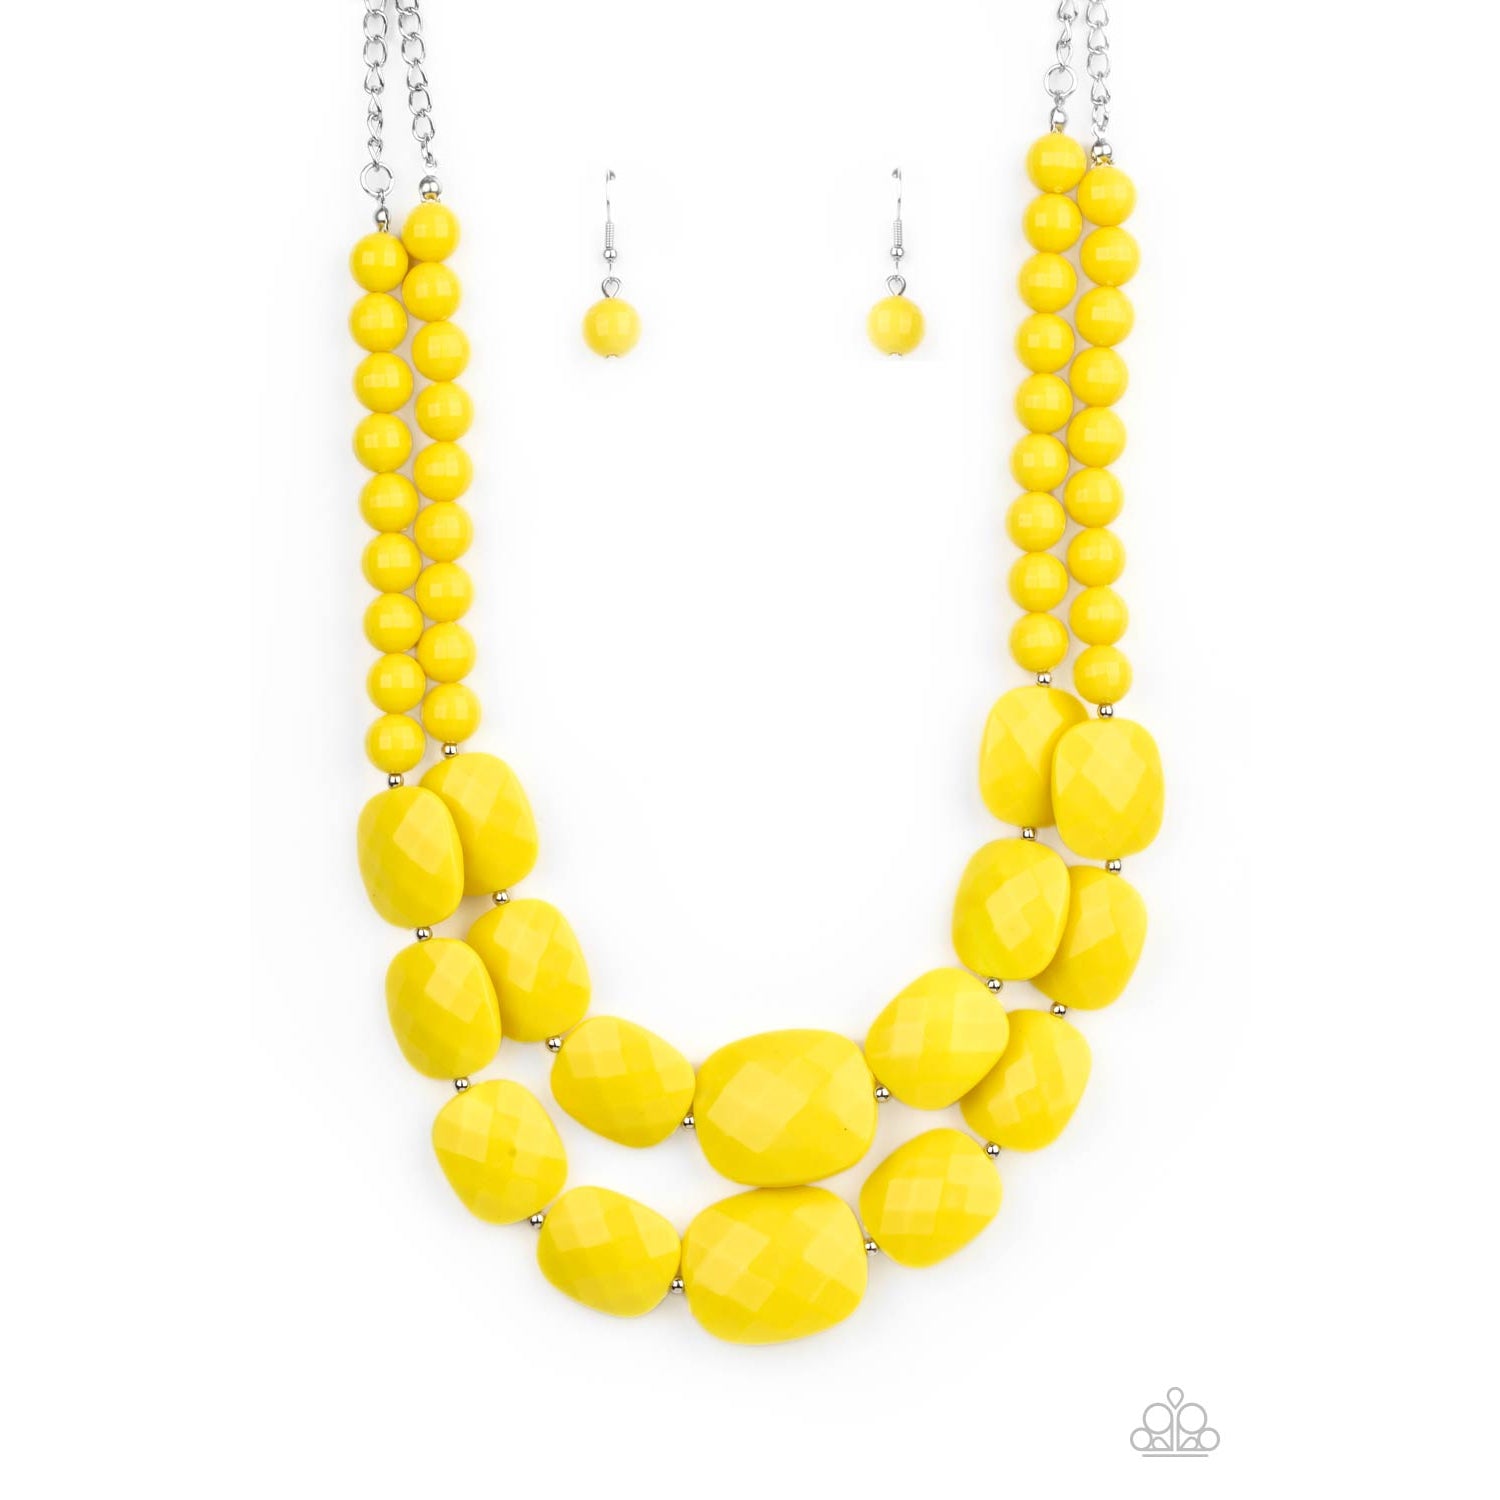 Paparazzi MERMAID MARMALADE yellow necklace | eBay